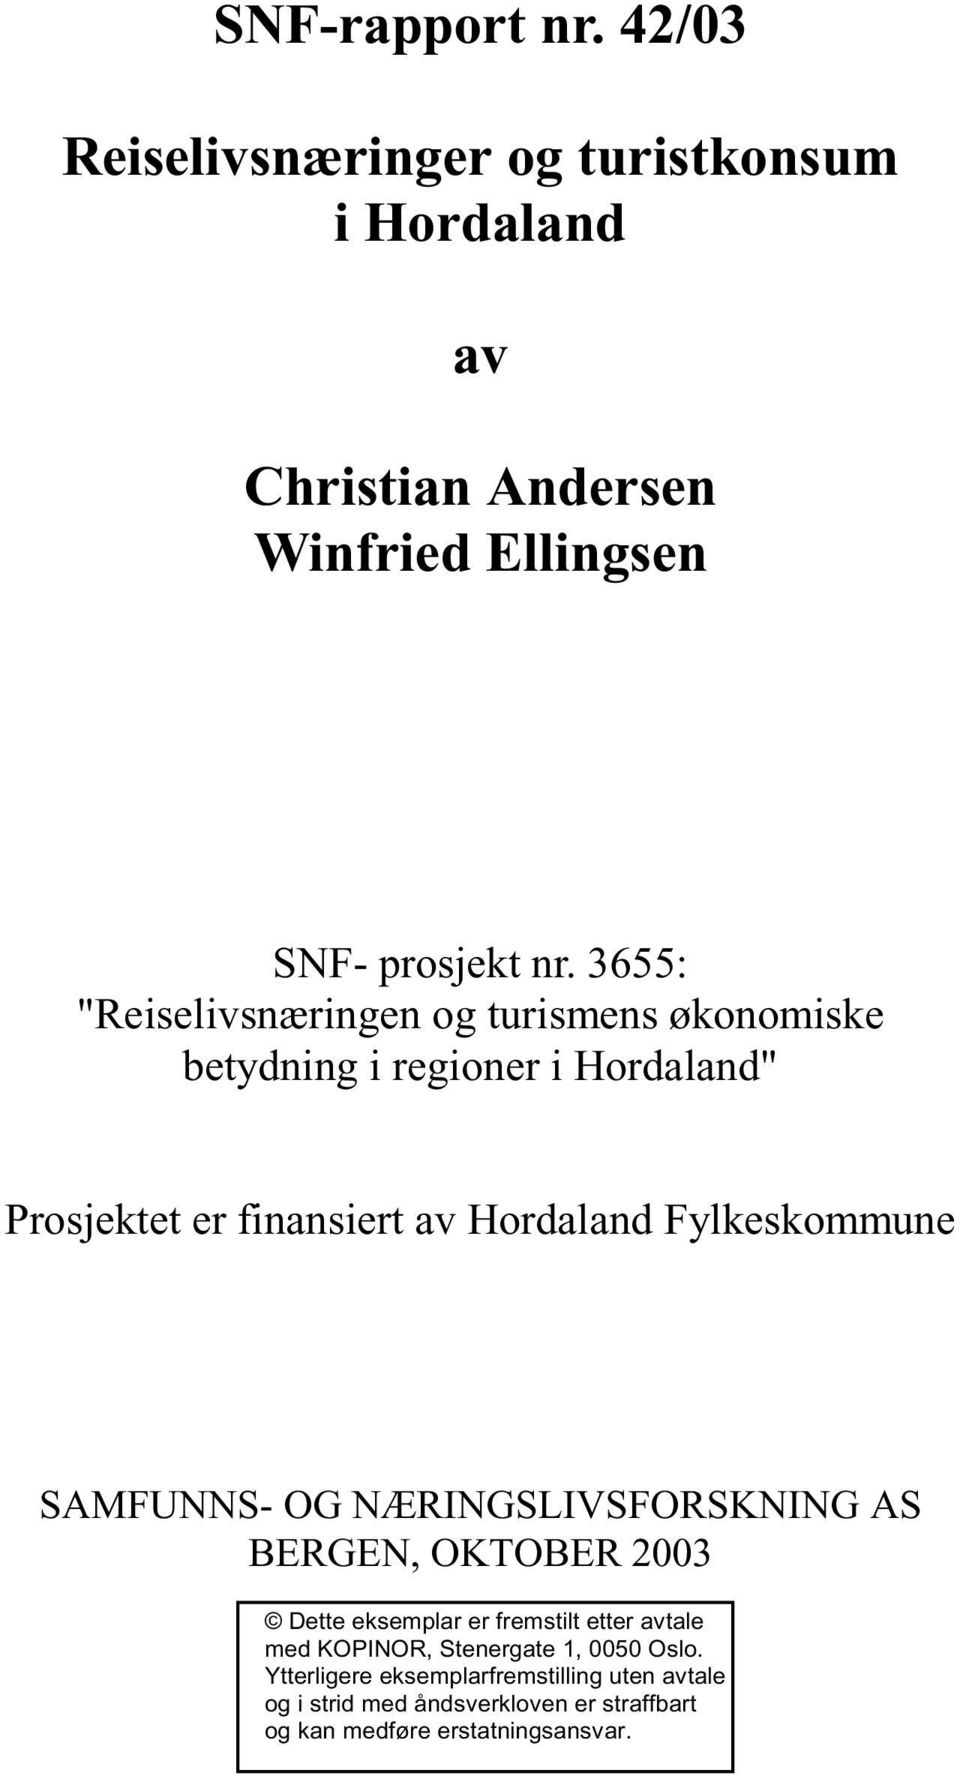 Fylkeskommune SAMFUNNS- OG NÆRINGSLIVSFORSKNING AS BERGEN, OKTOBER 2003 Dette eksemplar er fremstilt etter avtale med